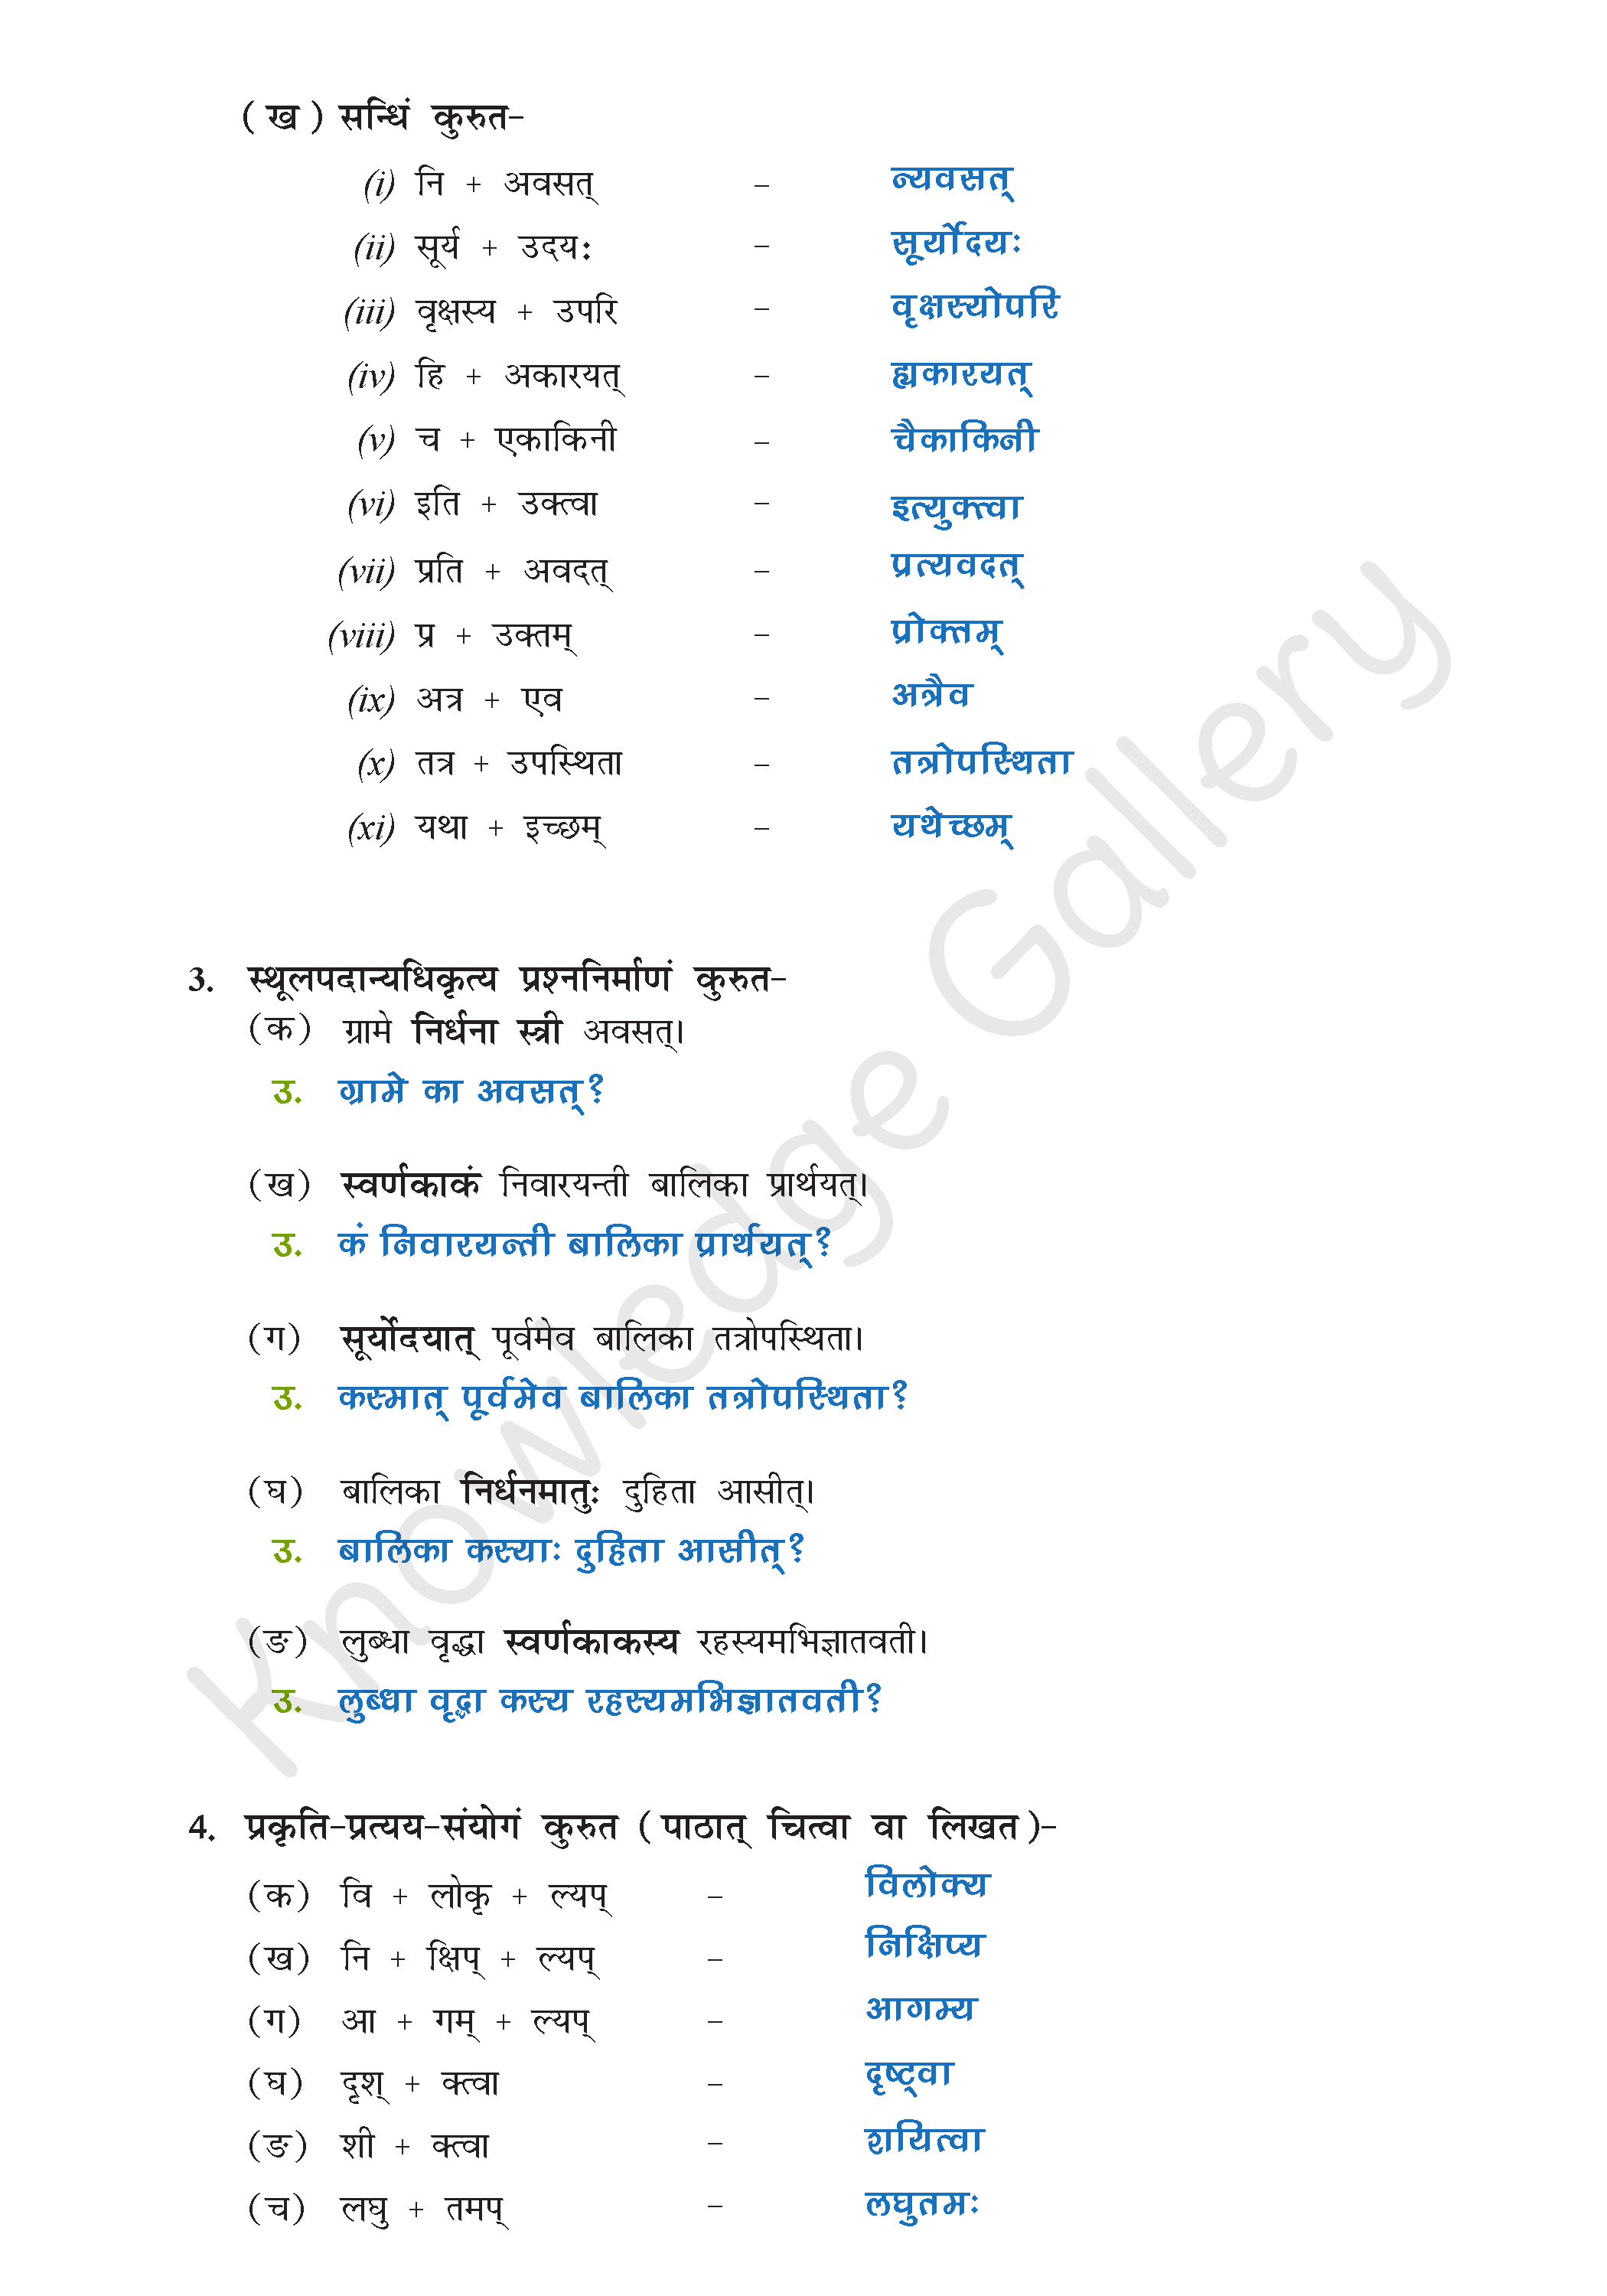 NCERT Solution For Class 9 Sanskrit Chapter 2 part 6